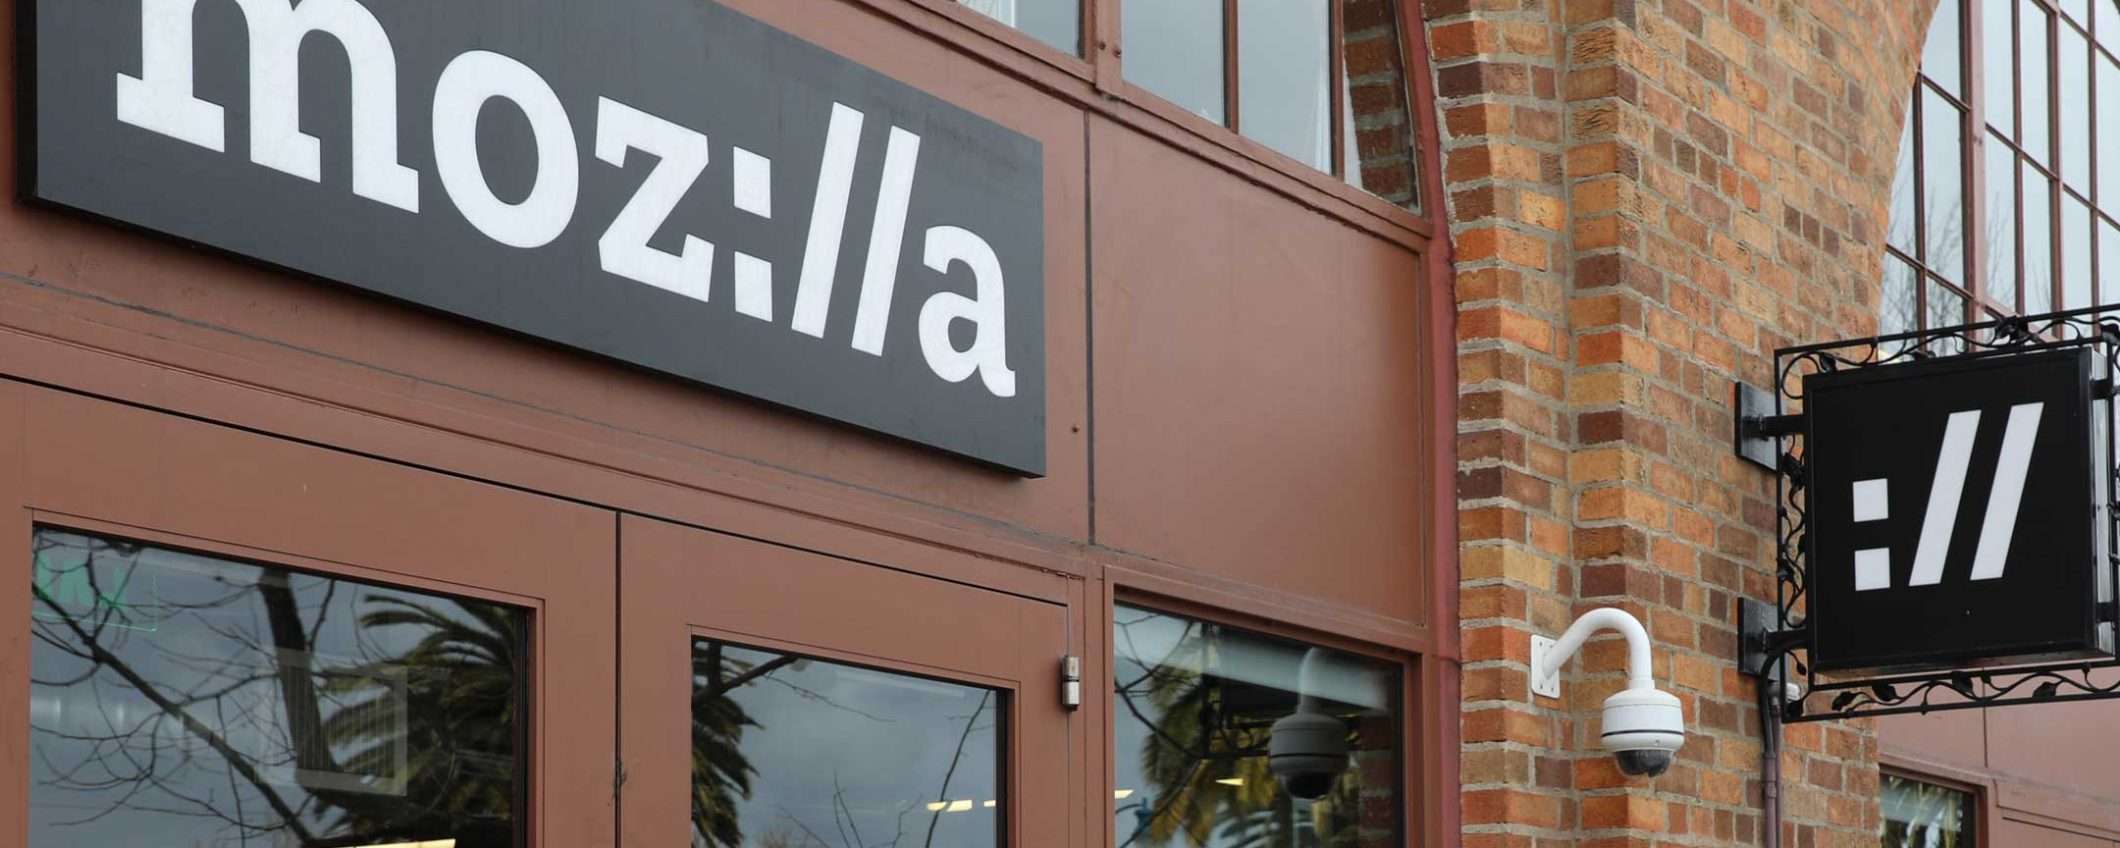 Mozilla licenzia: via subito 250 dipendenti